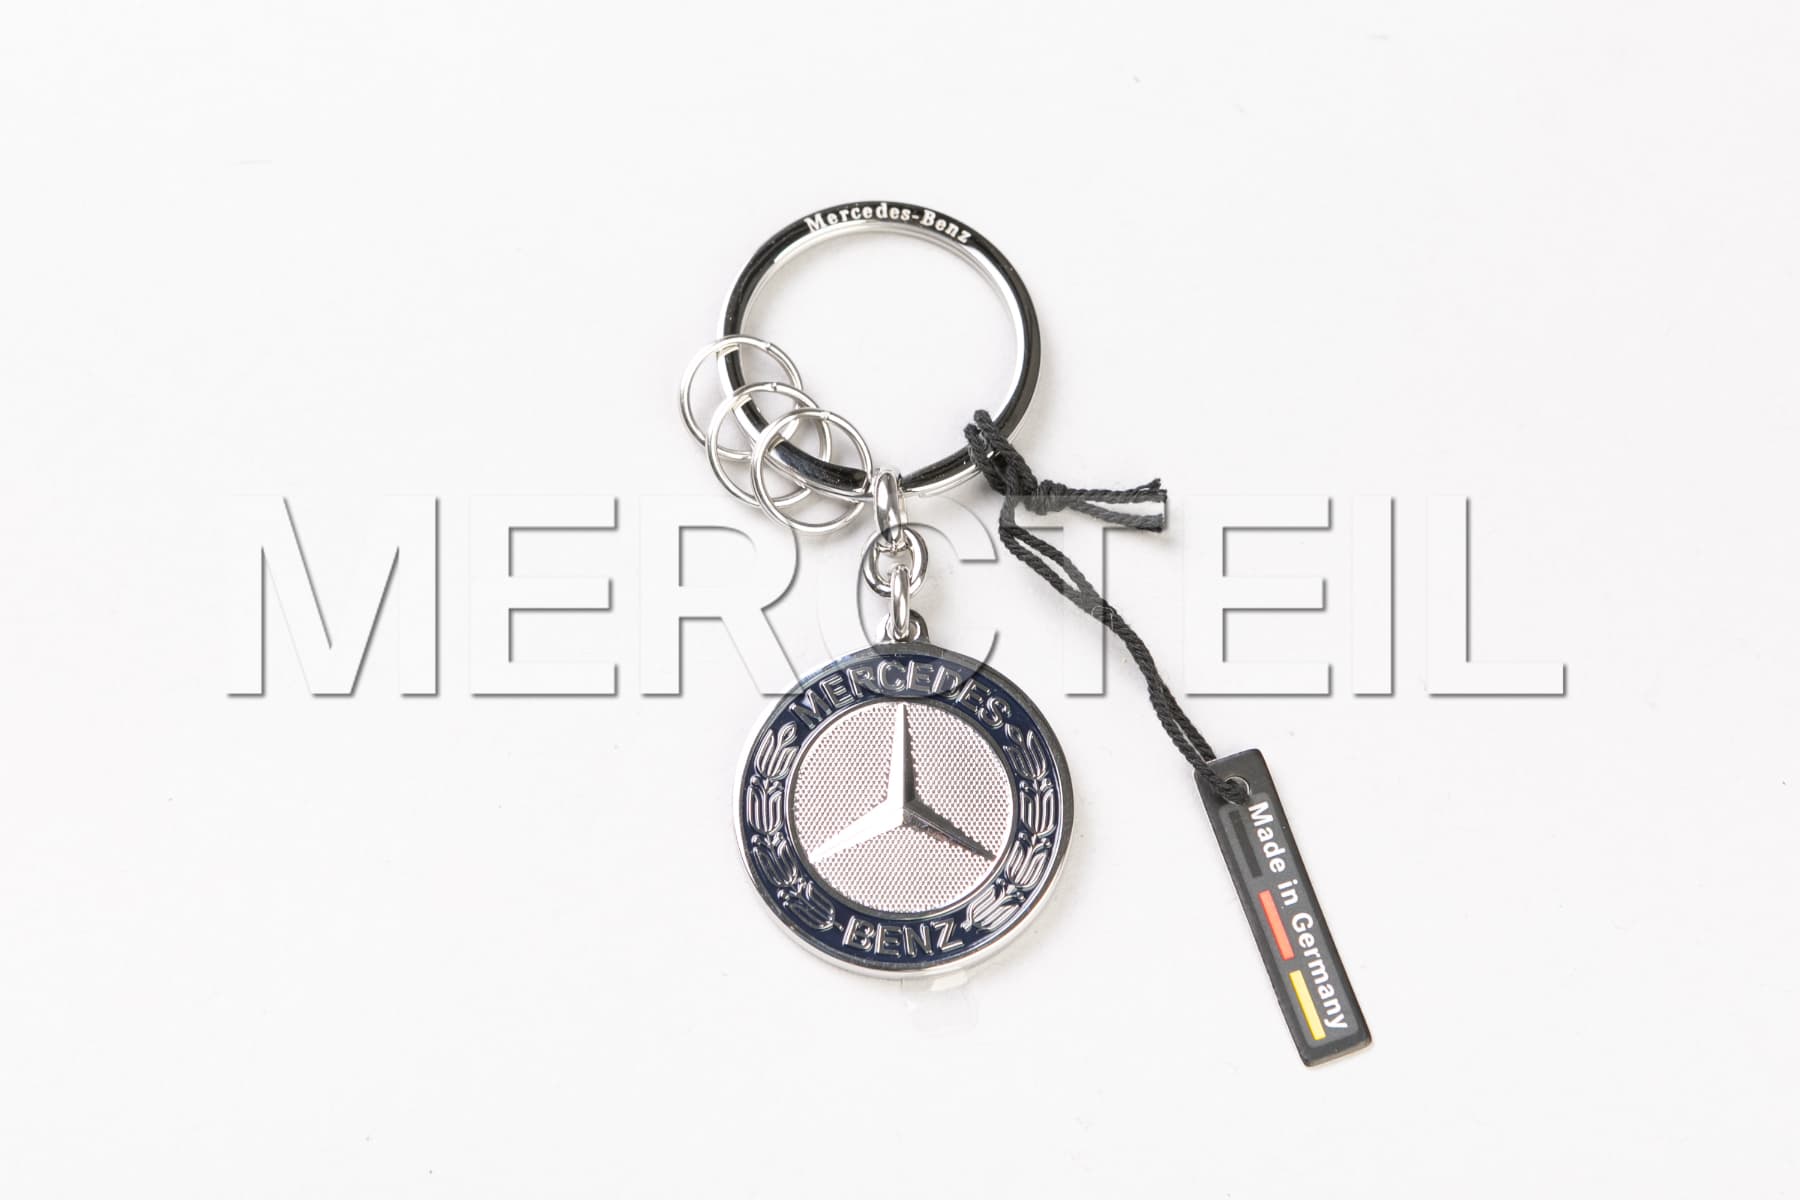 https://mercteil.com/s3/stuttgart-silver-stainless-steel-keychains-genuine-mercedes-benz-collection-1677254776228-x2.jpg